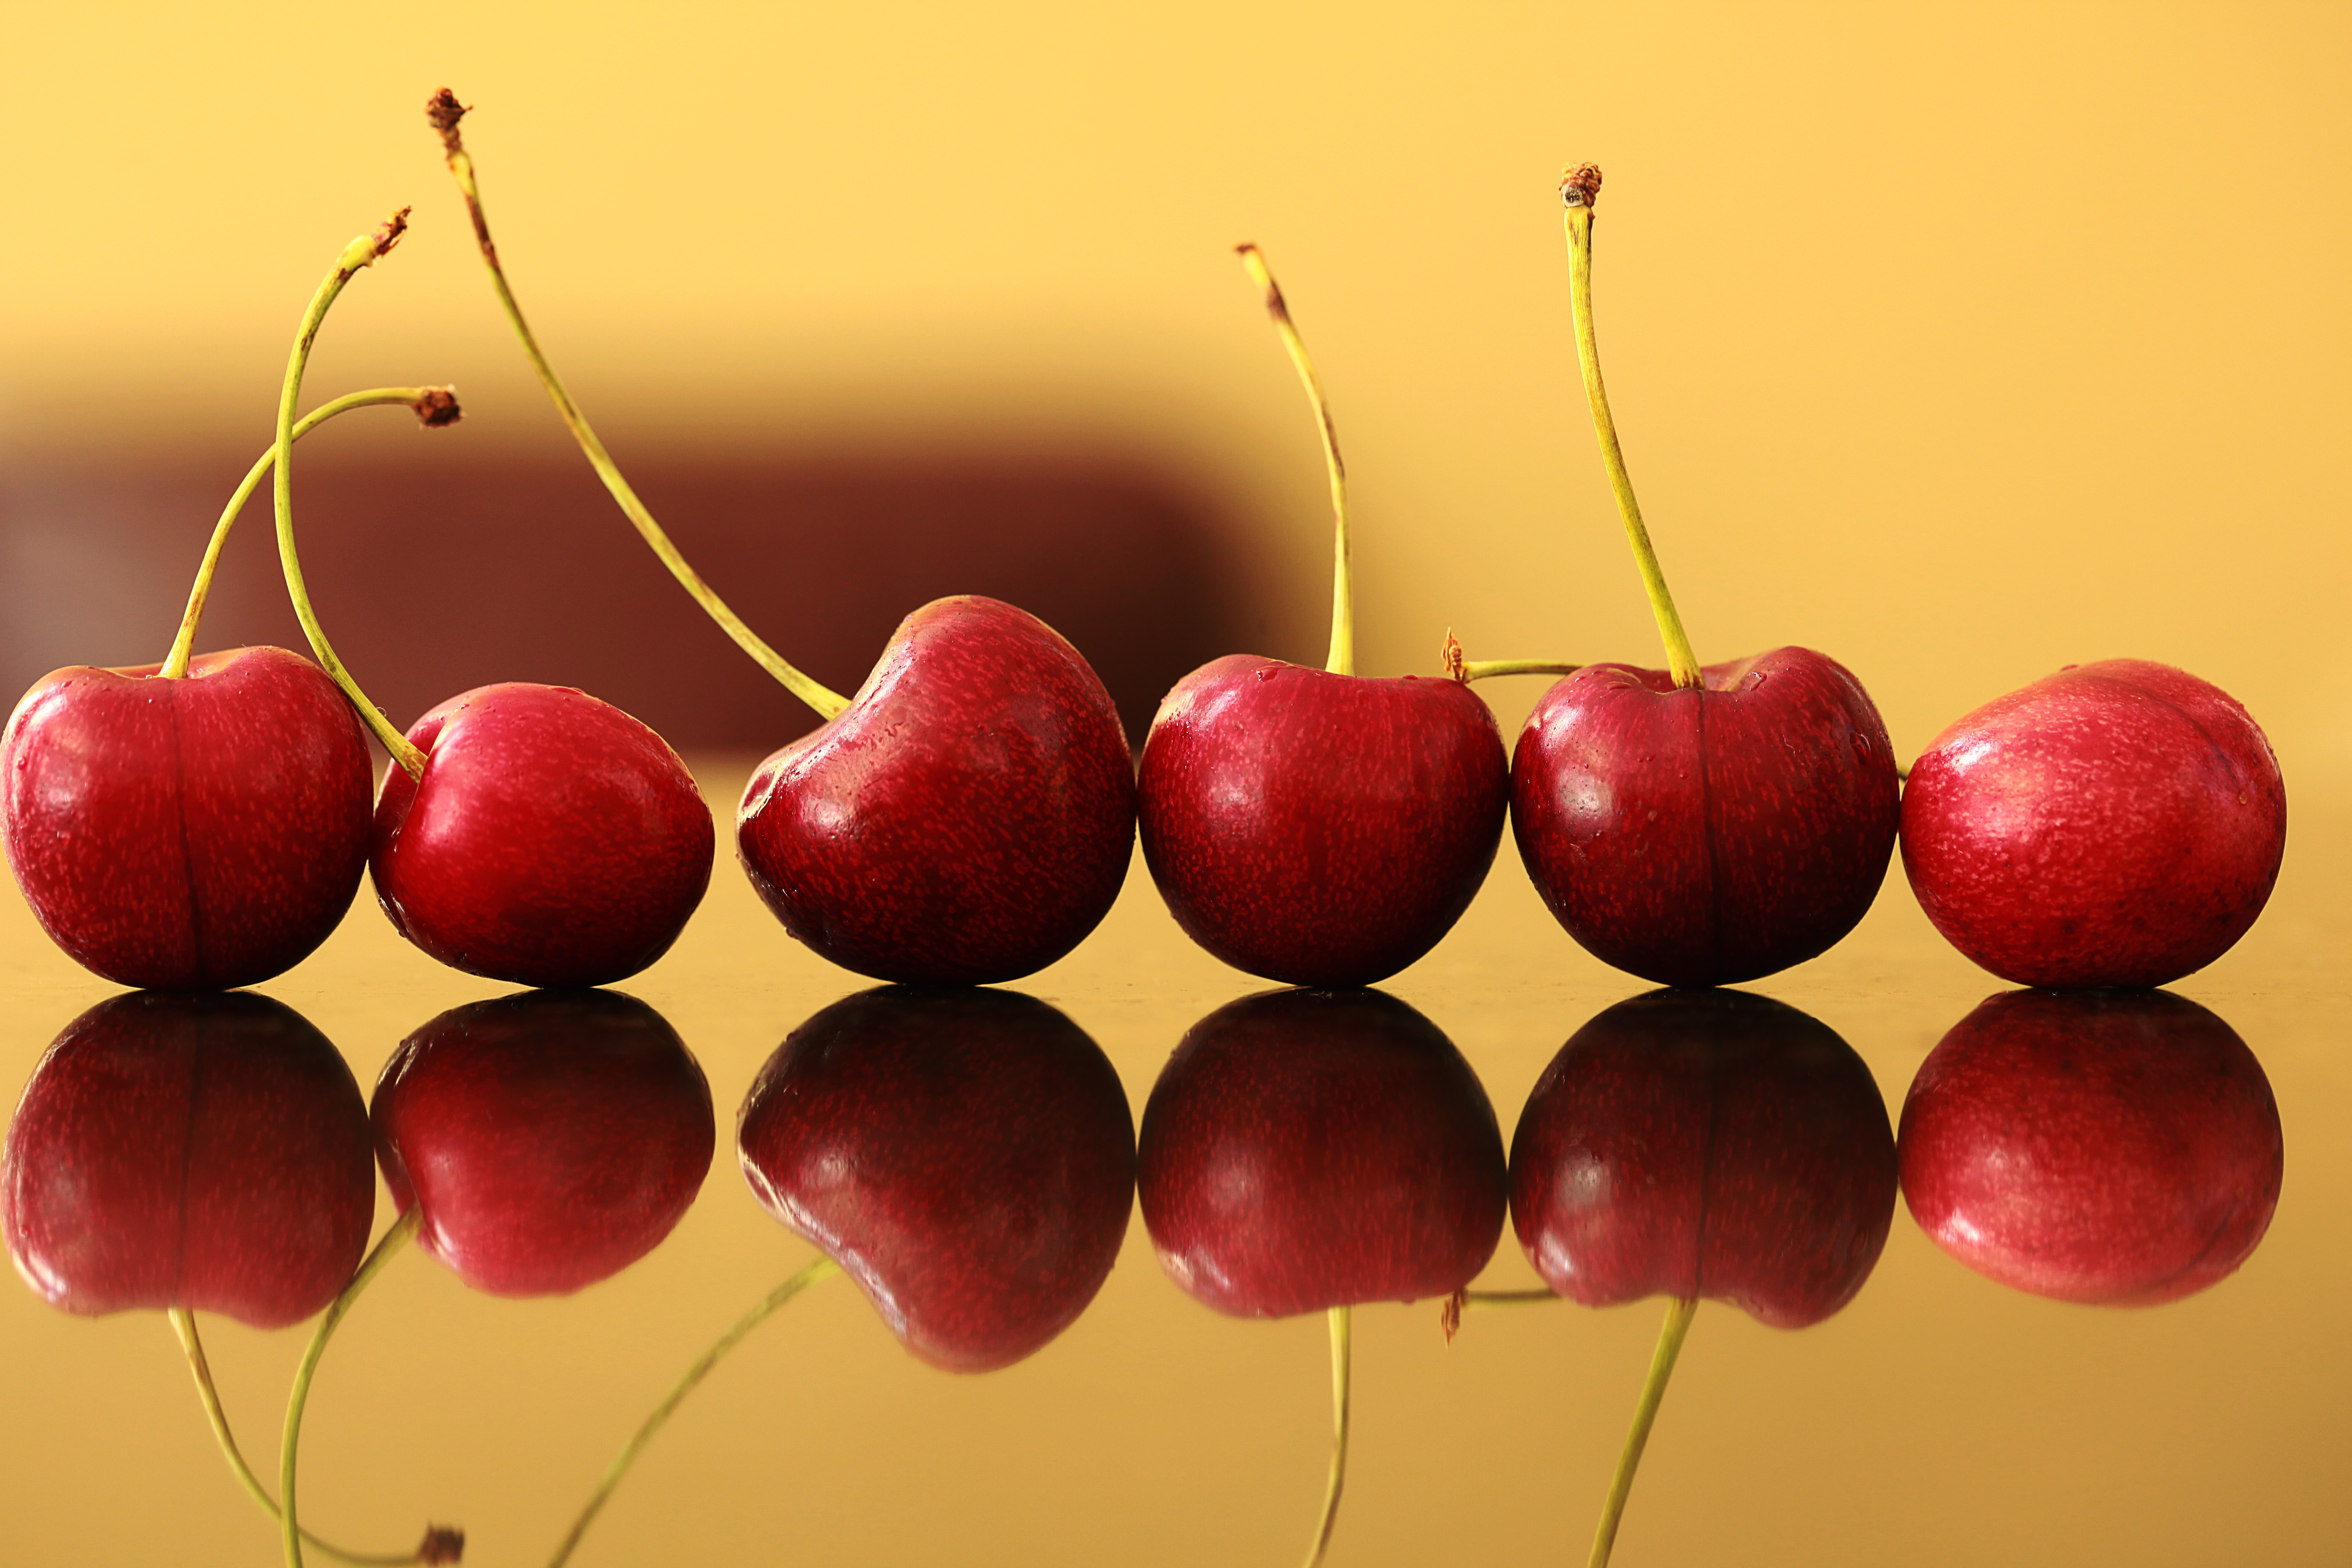 Cherry picking en de gruwel van de interne markt